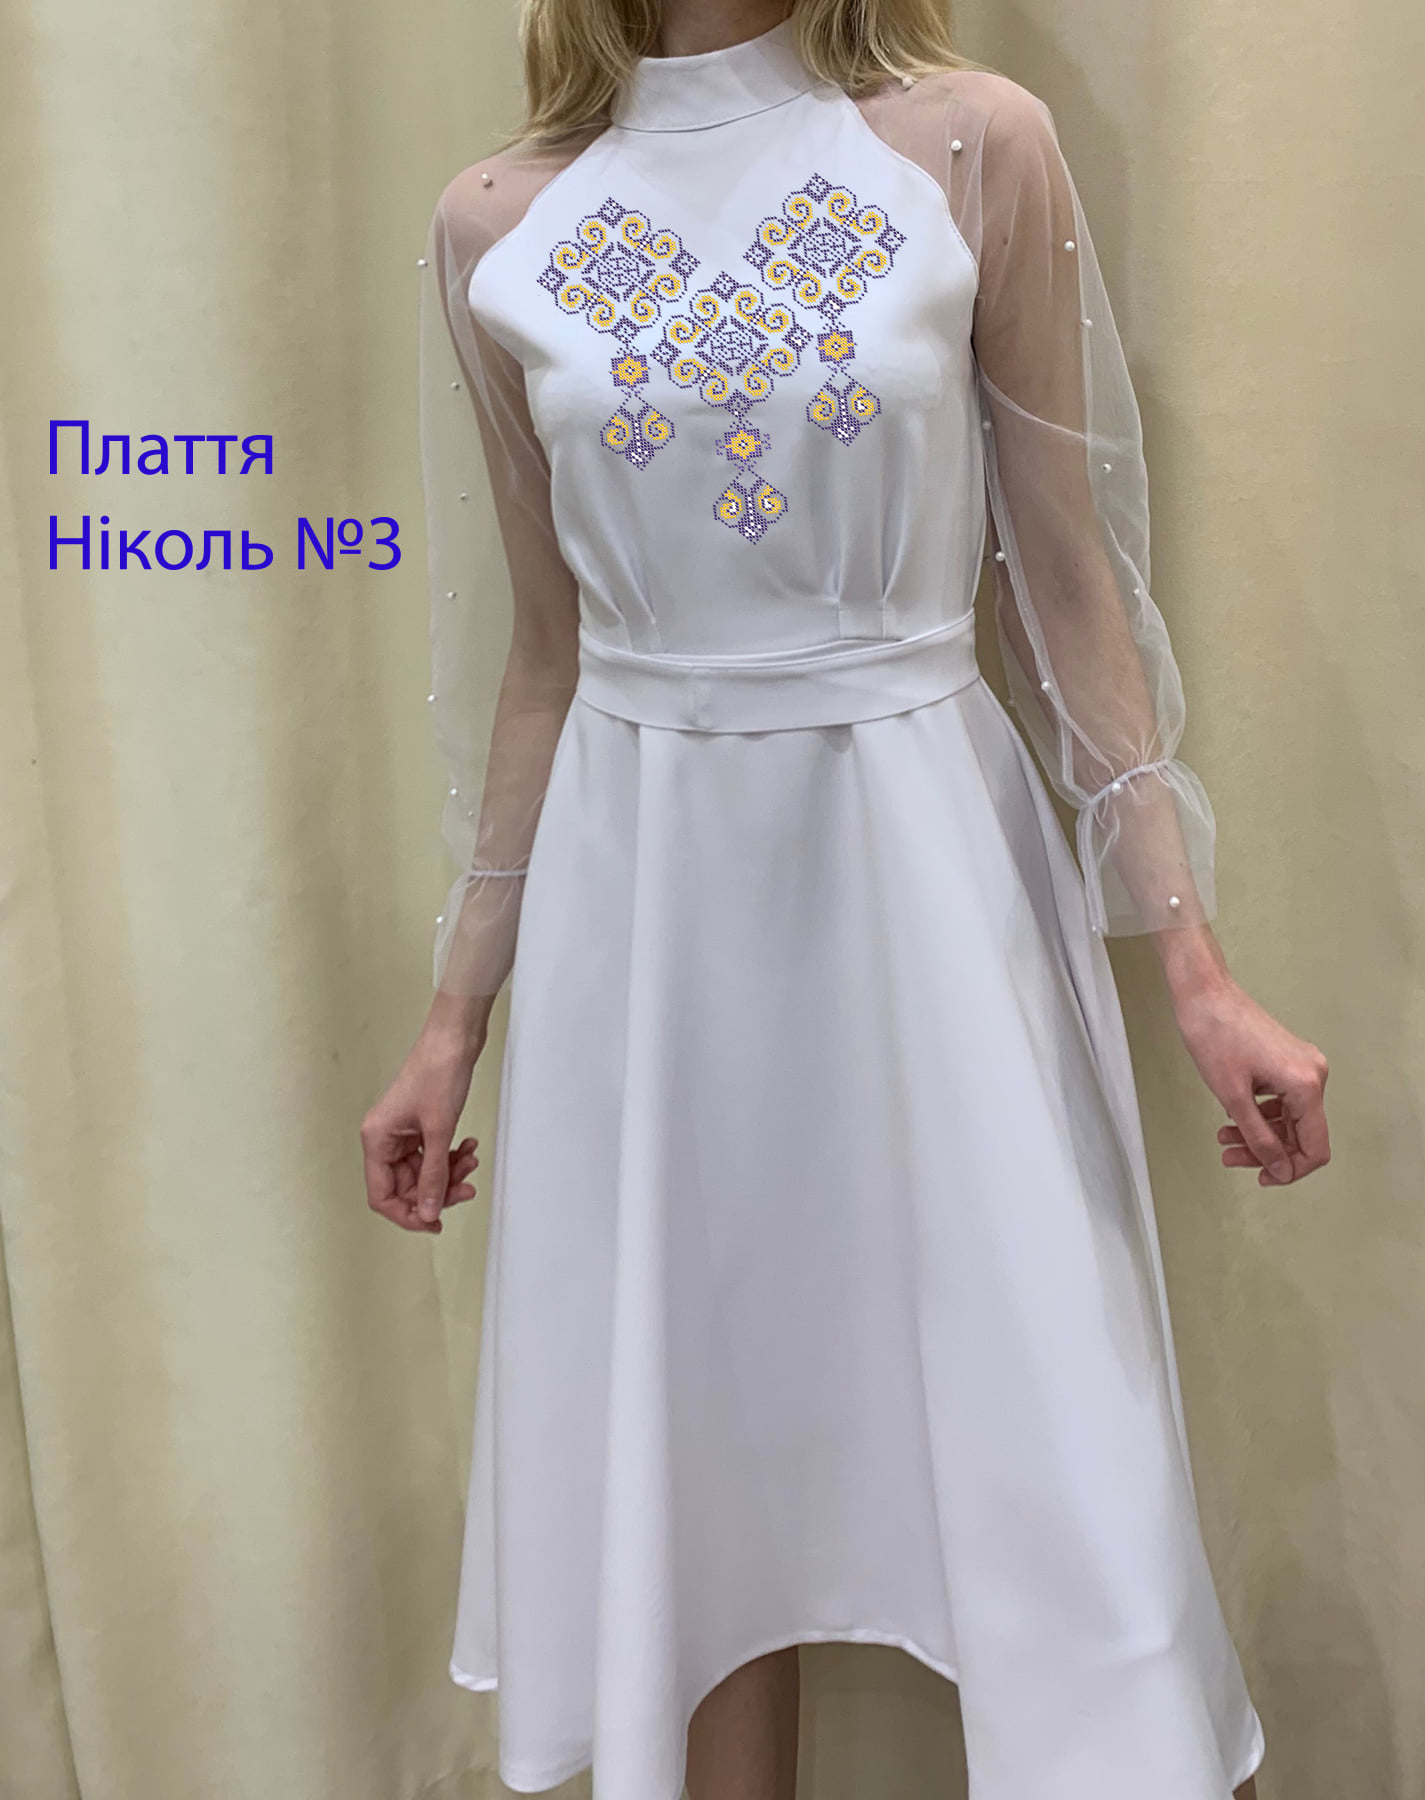 Пошита жіноча сукня для вишивки Ніколь №3